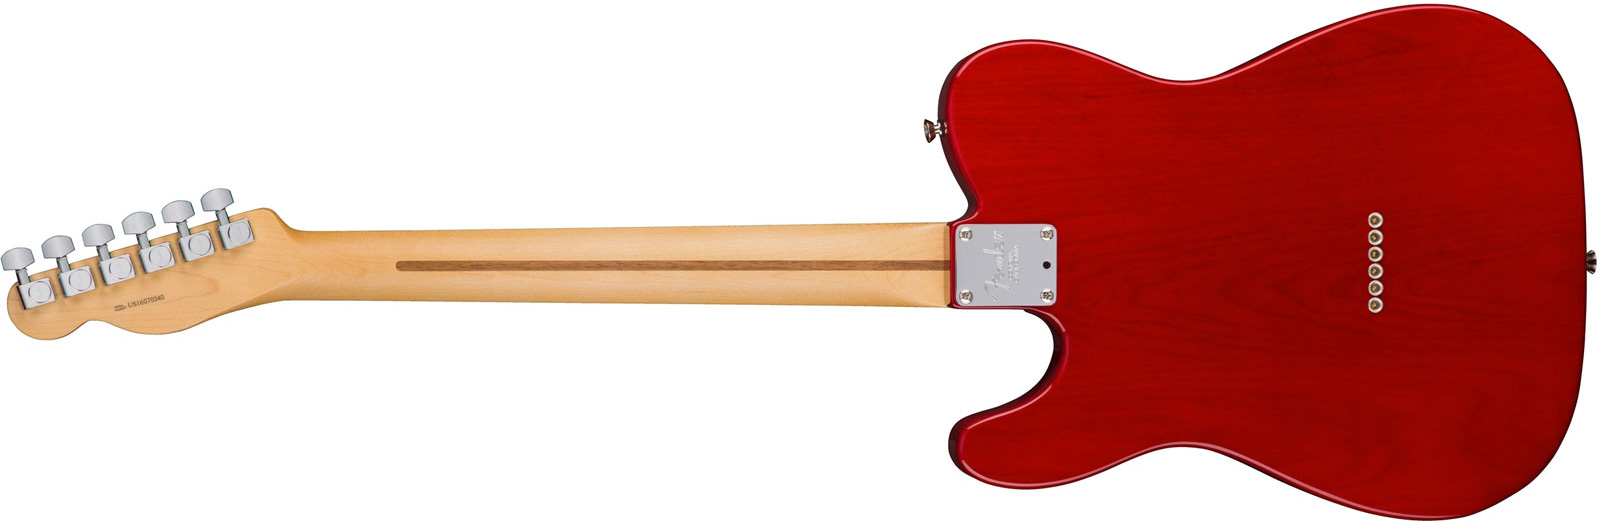 Fender Tele American Professional 2s Usa Rw - Crimson Red Transparent - Elektrische gitaar in Str-vorm - Variation 1